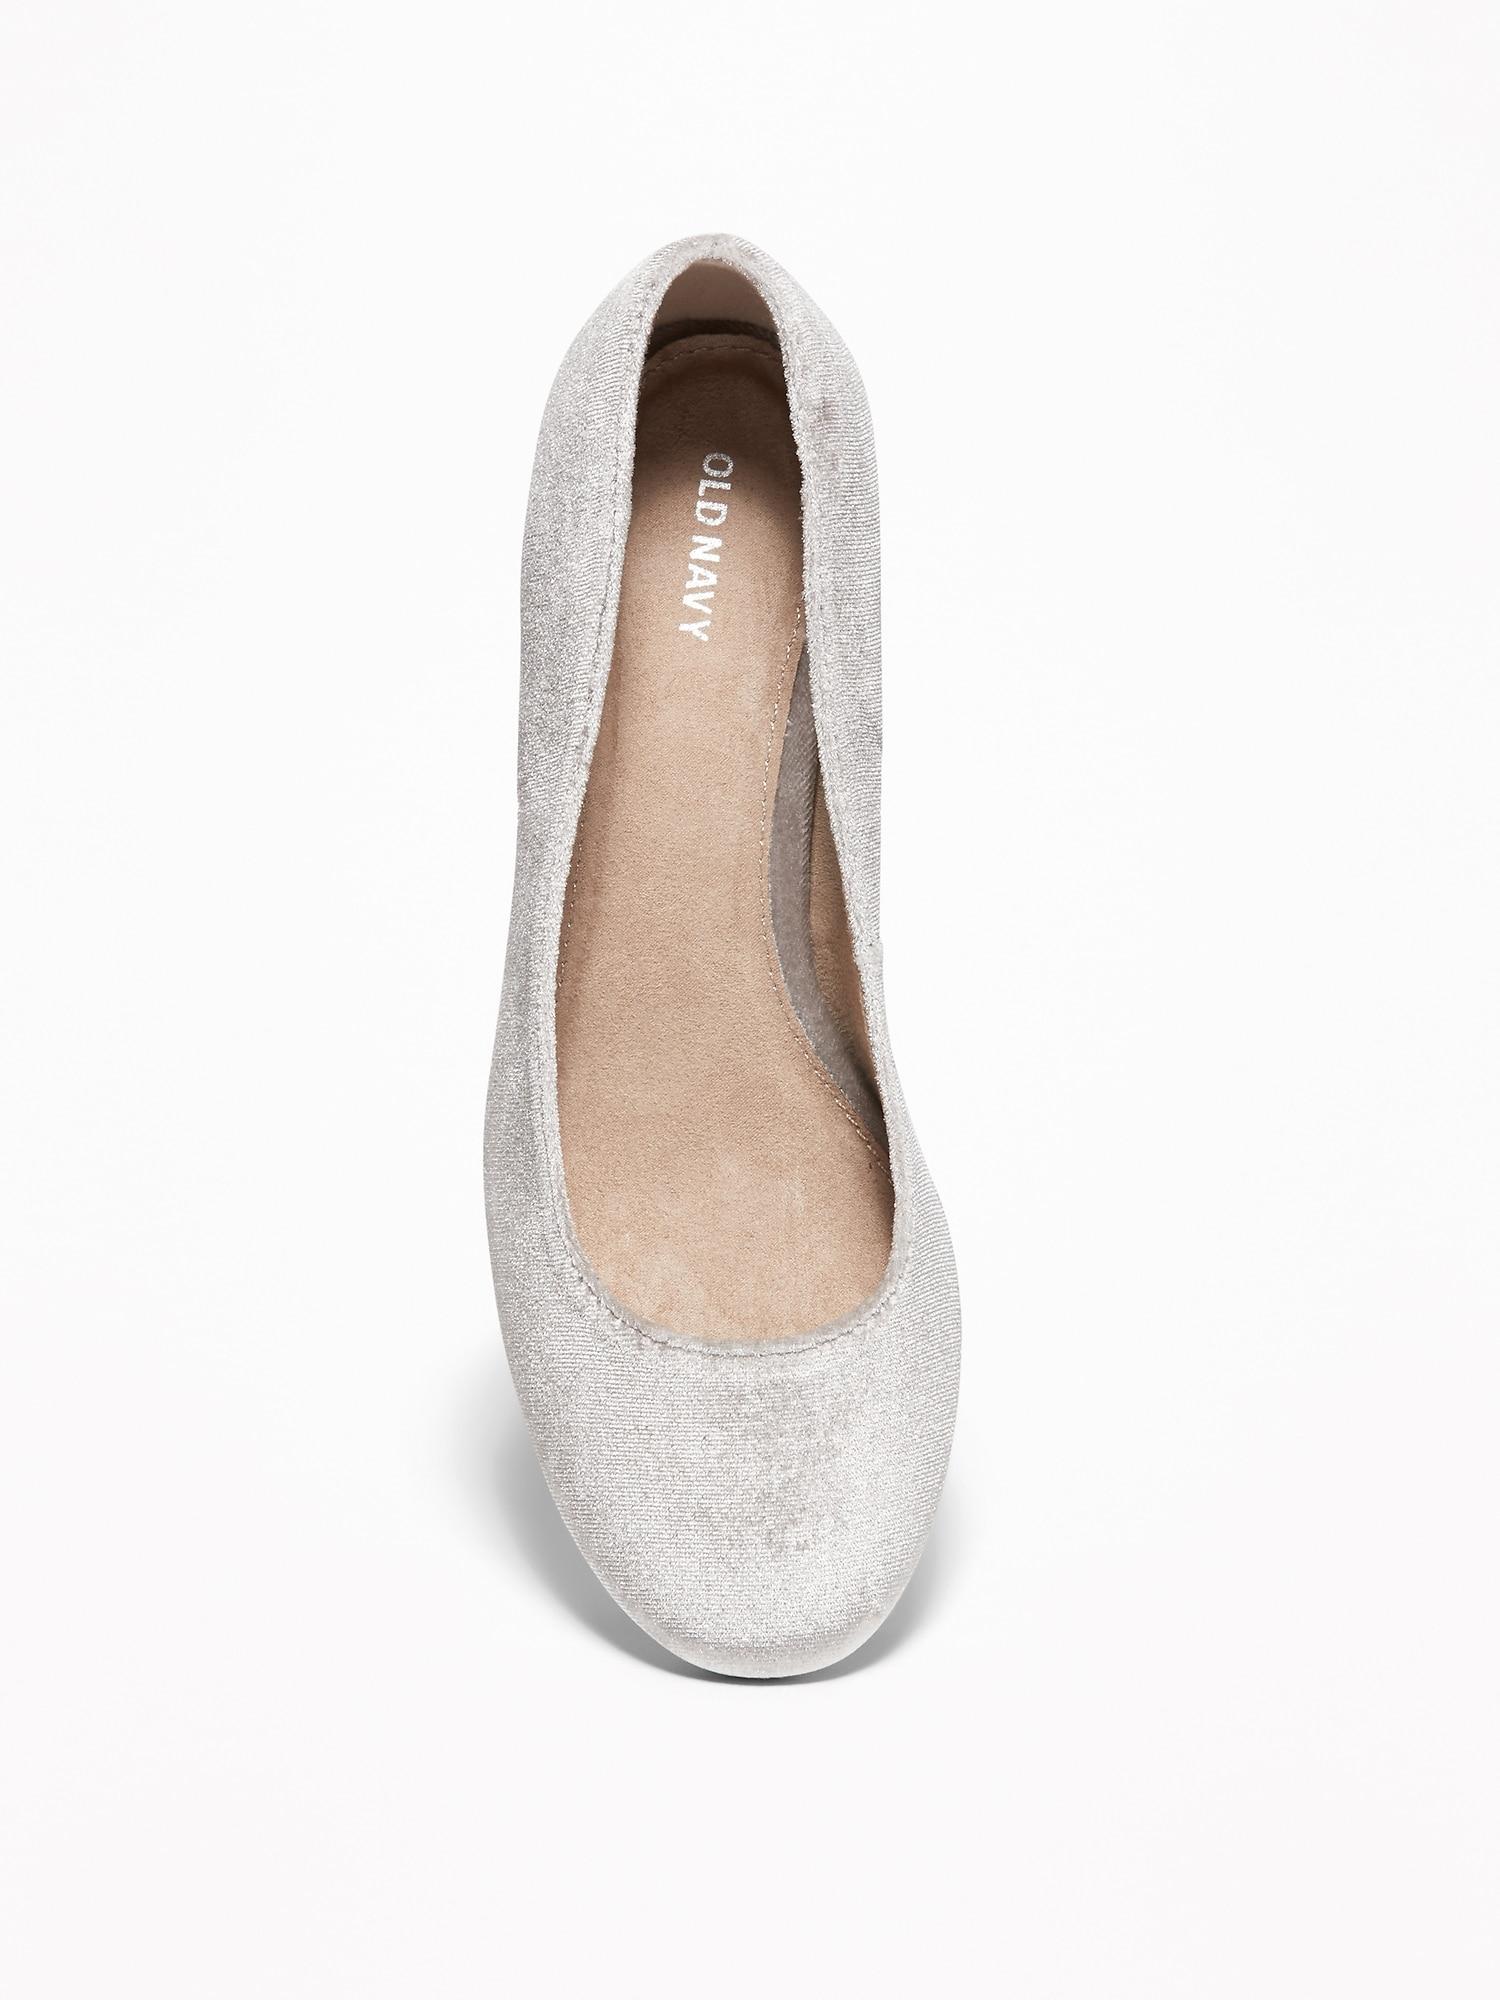 light gray block heels